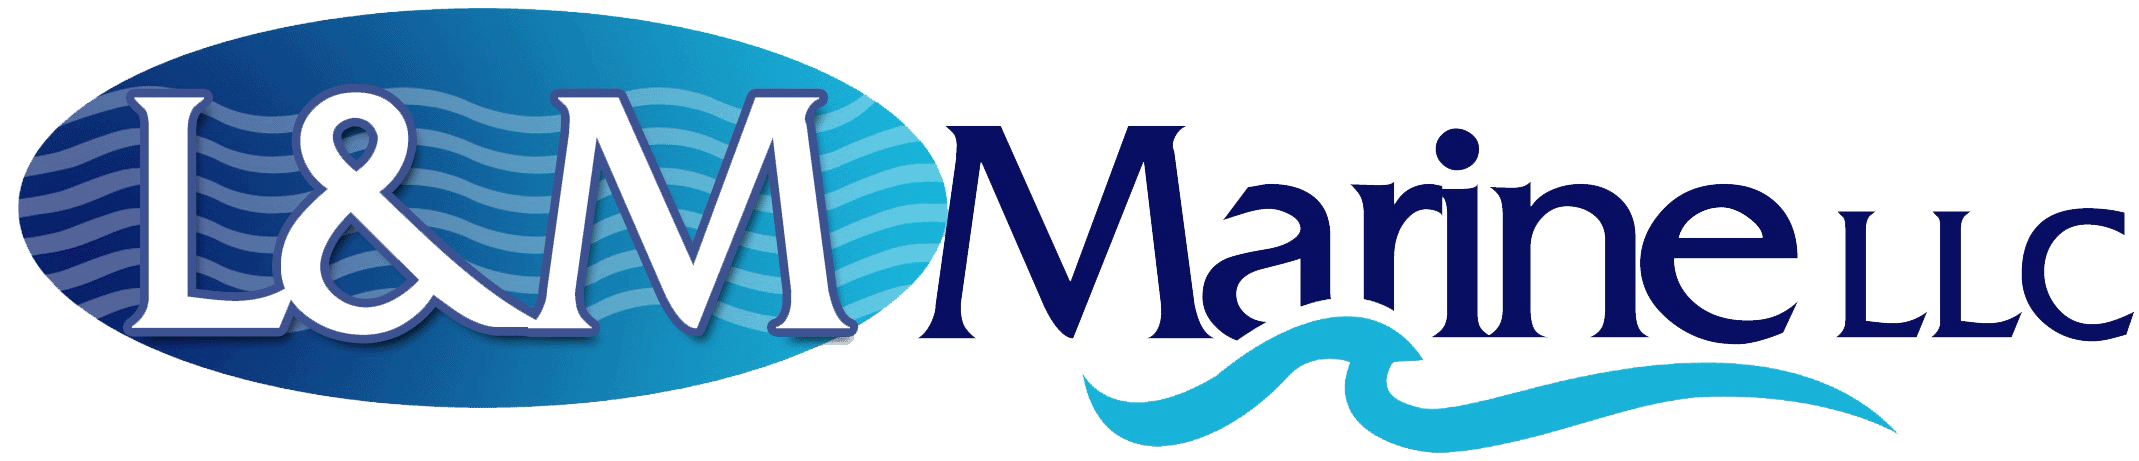 L&M Marine Logo